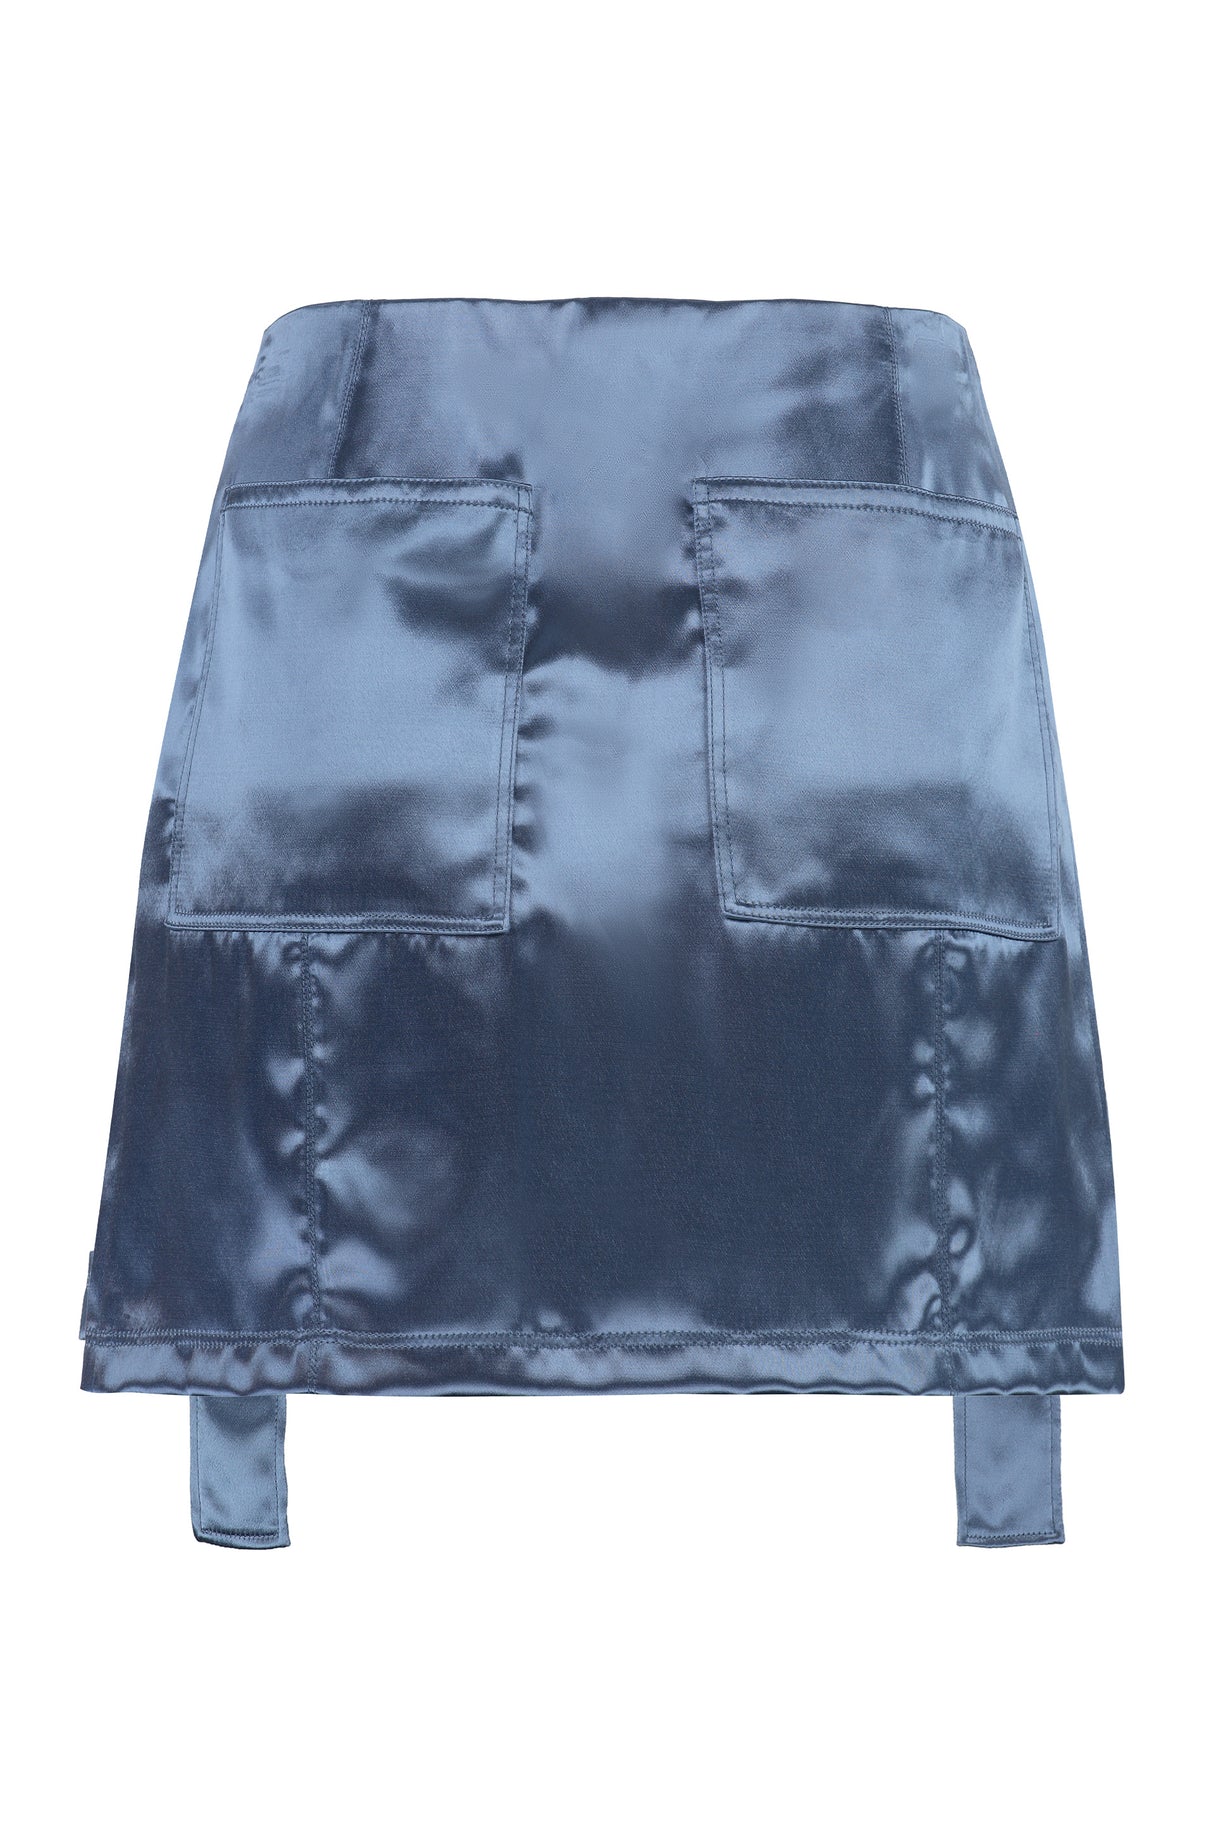 パウダーブルーサテンスカート - 女性用カーゴポケット付きショートスカート